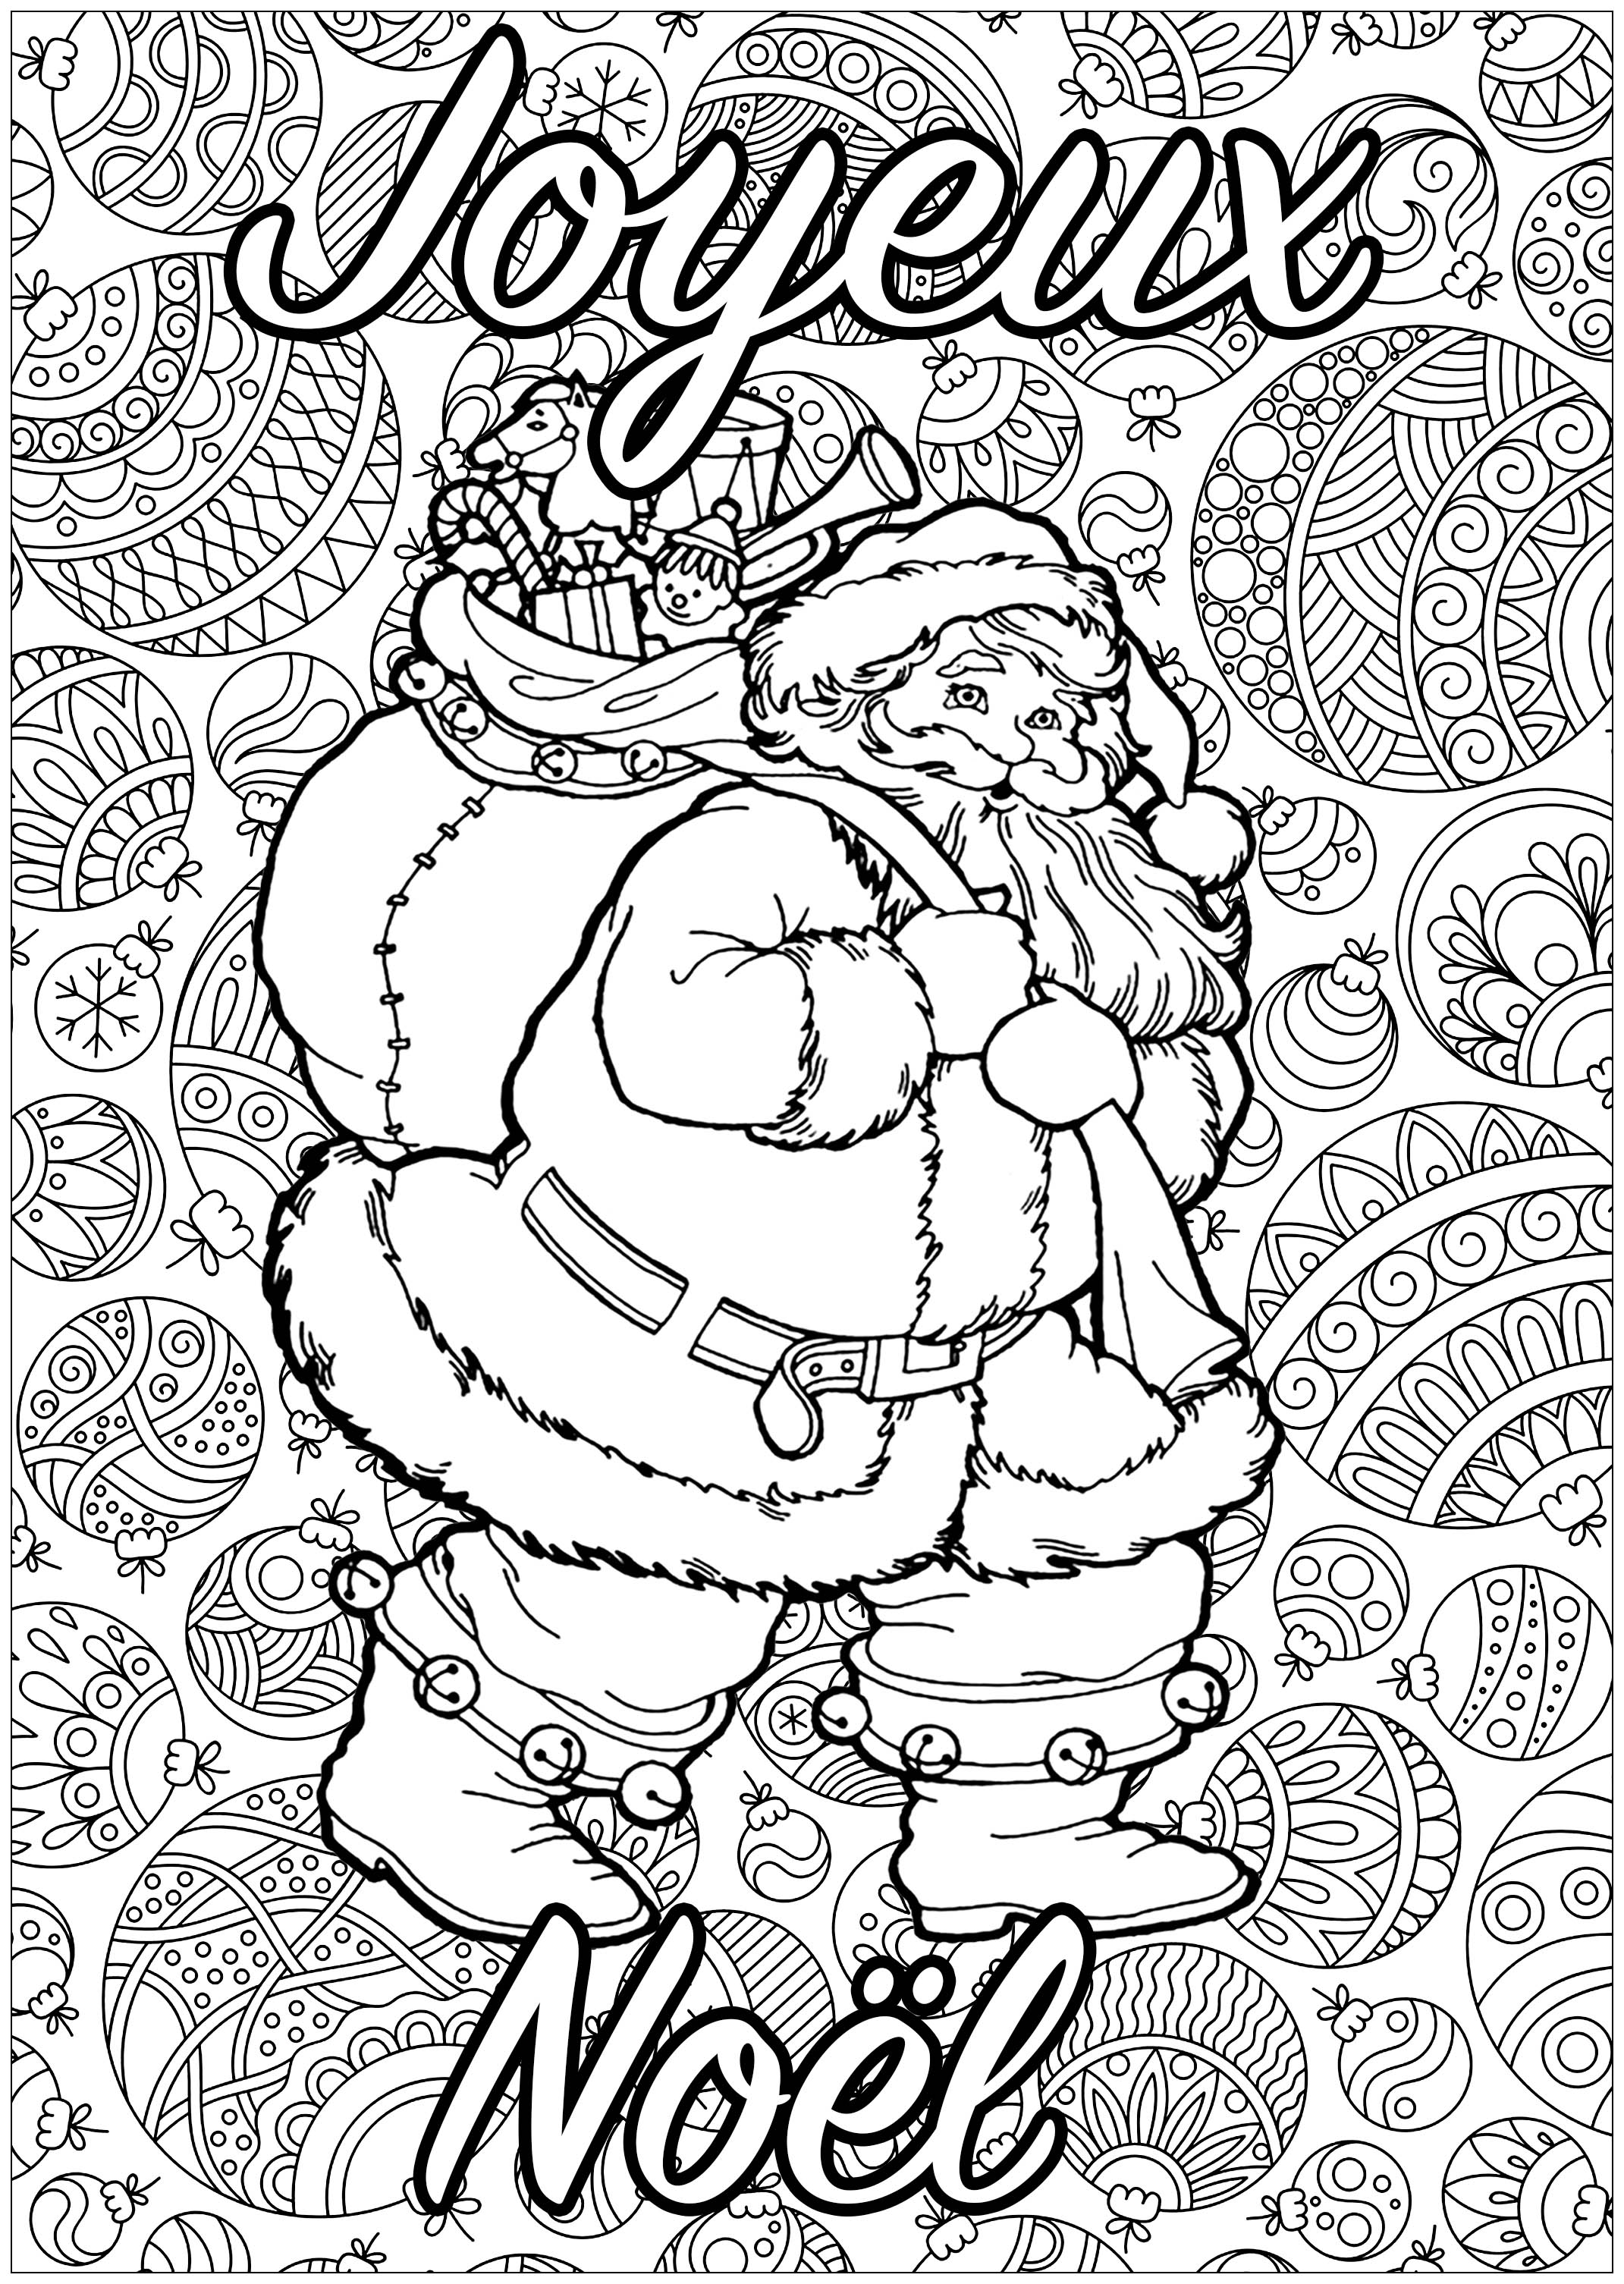 Père Noël à colorier, avec fond plein de motifs, et texte 'Joyeux Noël'